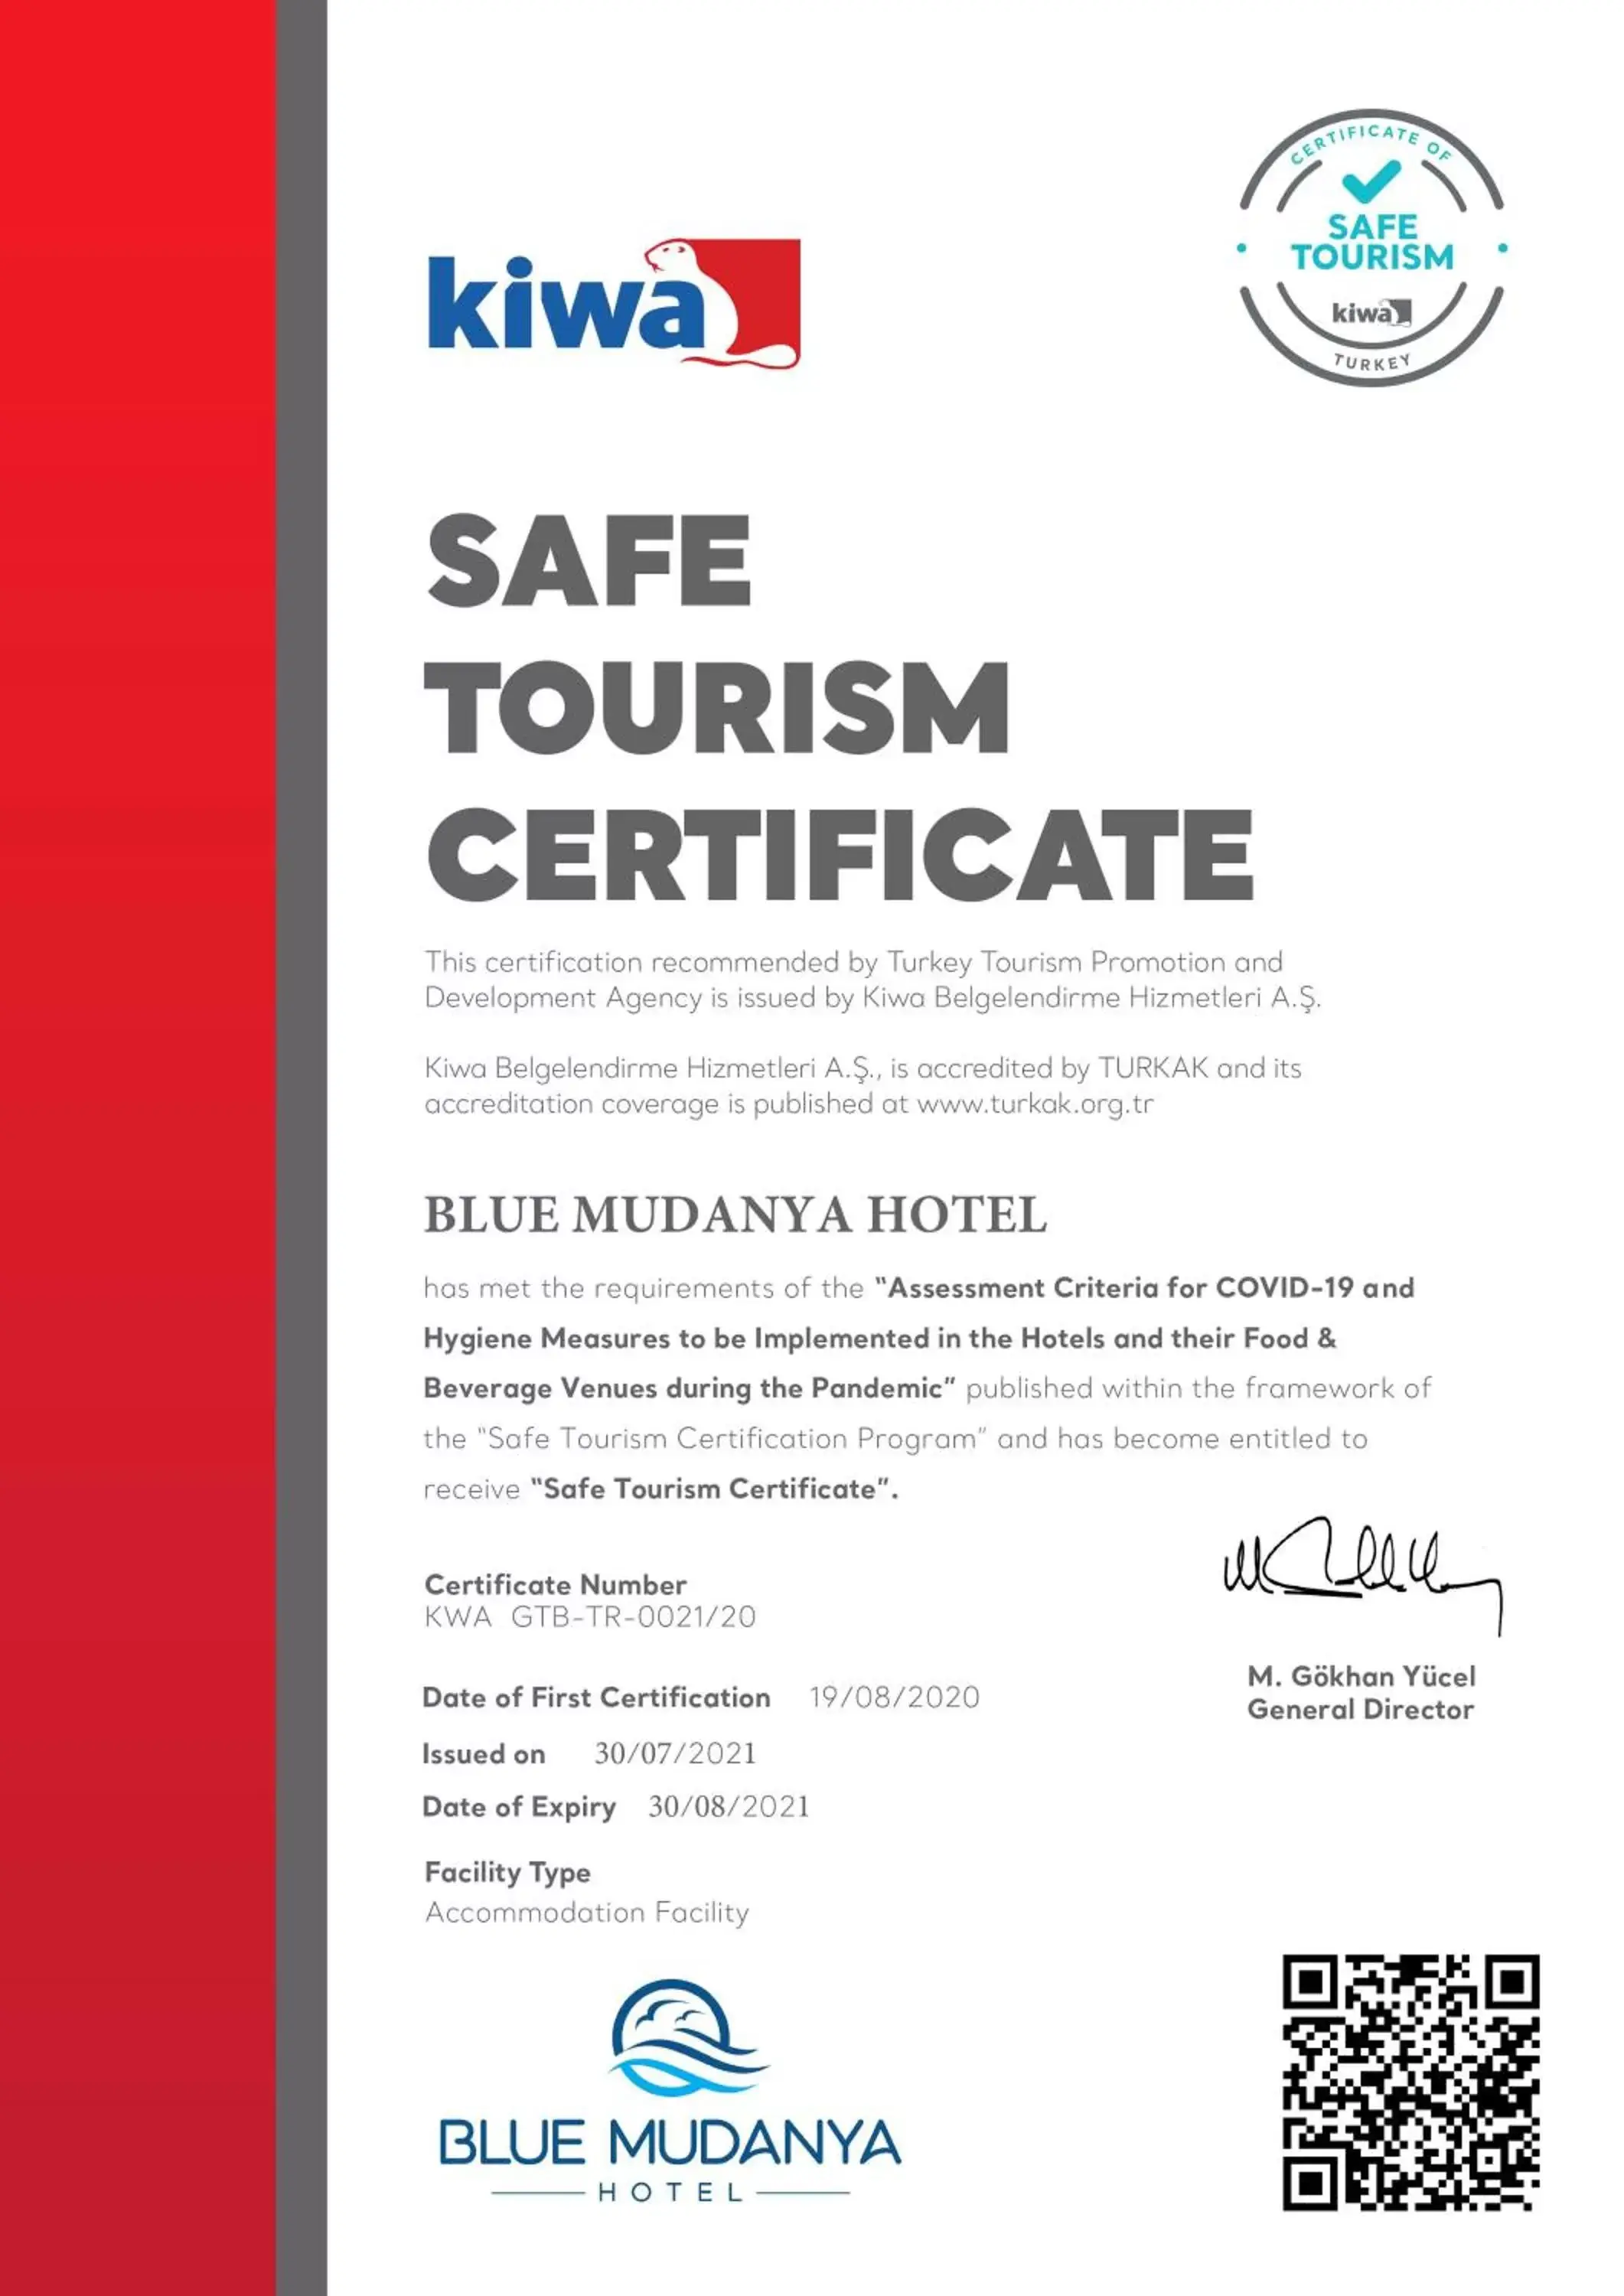 Logo/Certificate/Sign in BLUE MUDANYA HOTEL